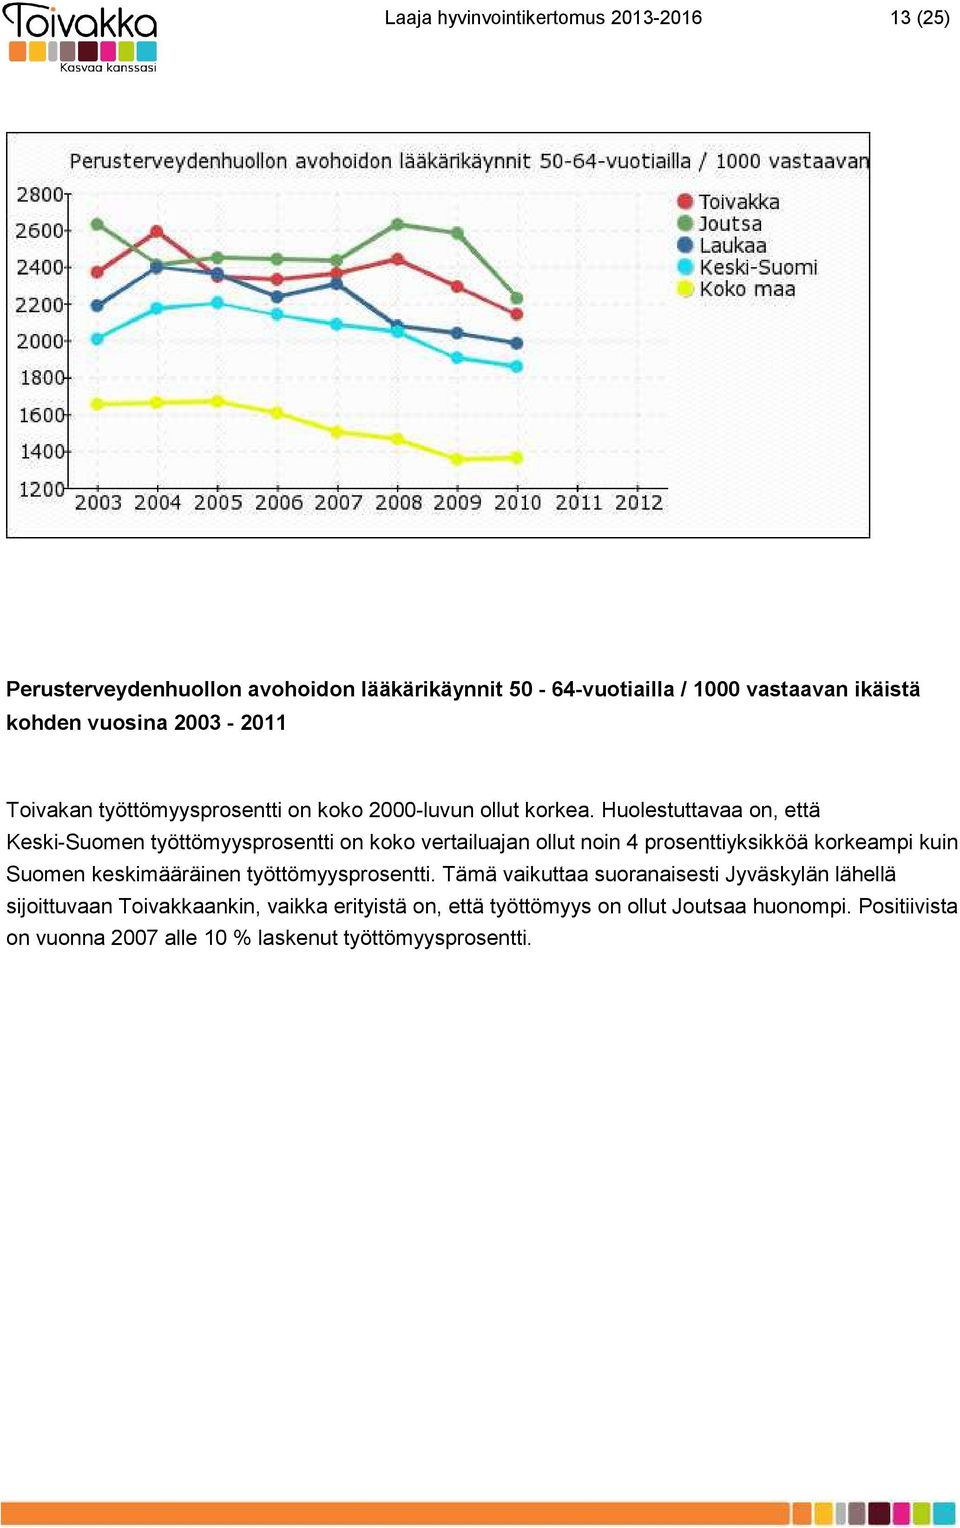 Huolestuttavaa on, että Keski-Suomen työttömyysprosentti on koko vertailuajan ollut noin 4 prosenttiyksikköä korkeampi kuin Suomen keskimääräinen